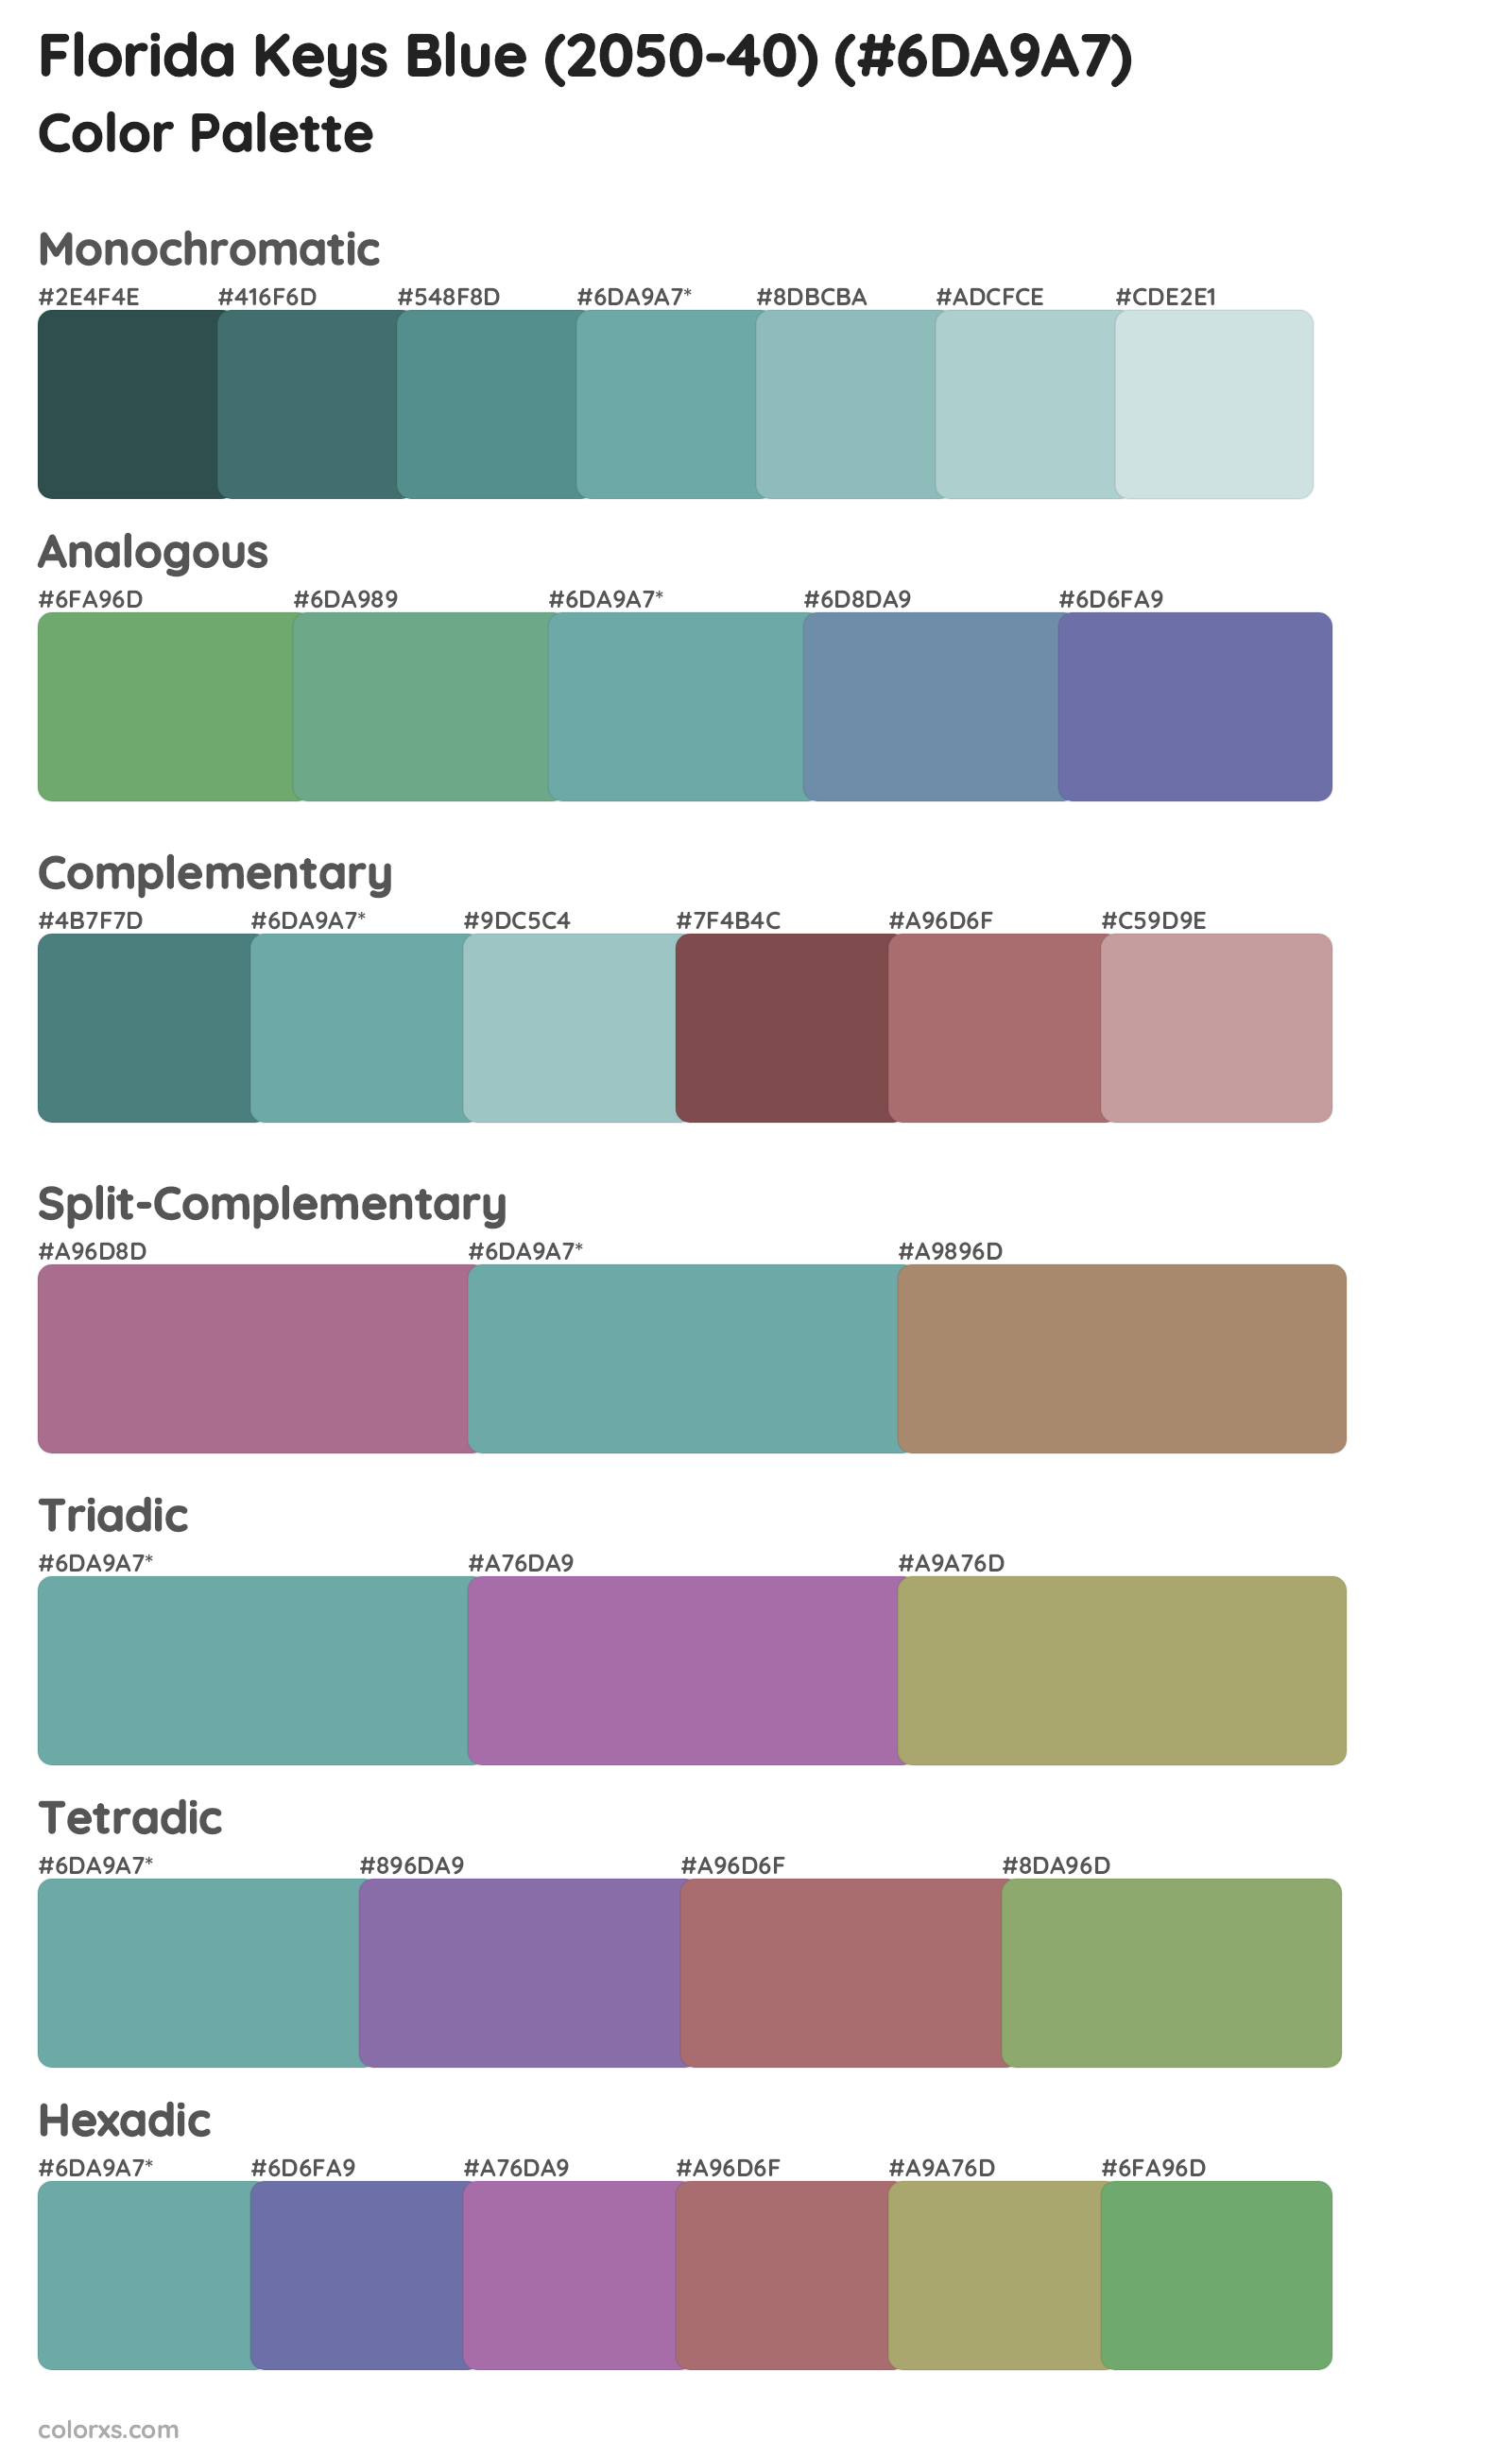 Florida Keys Blue (2050-40) Color Scheme Palettes